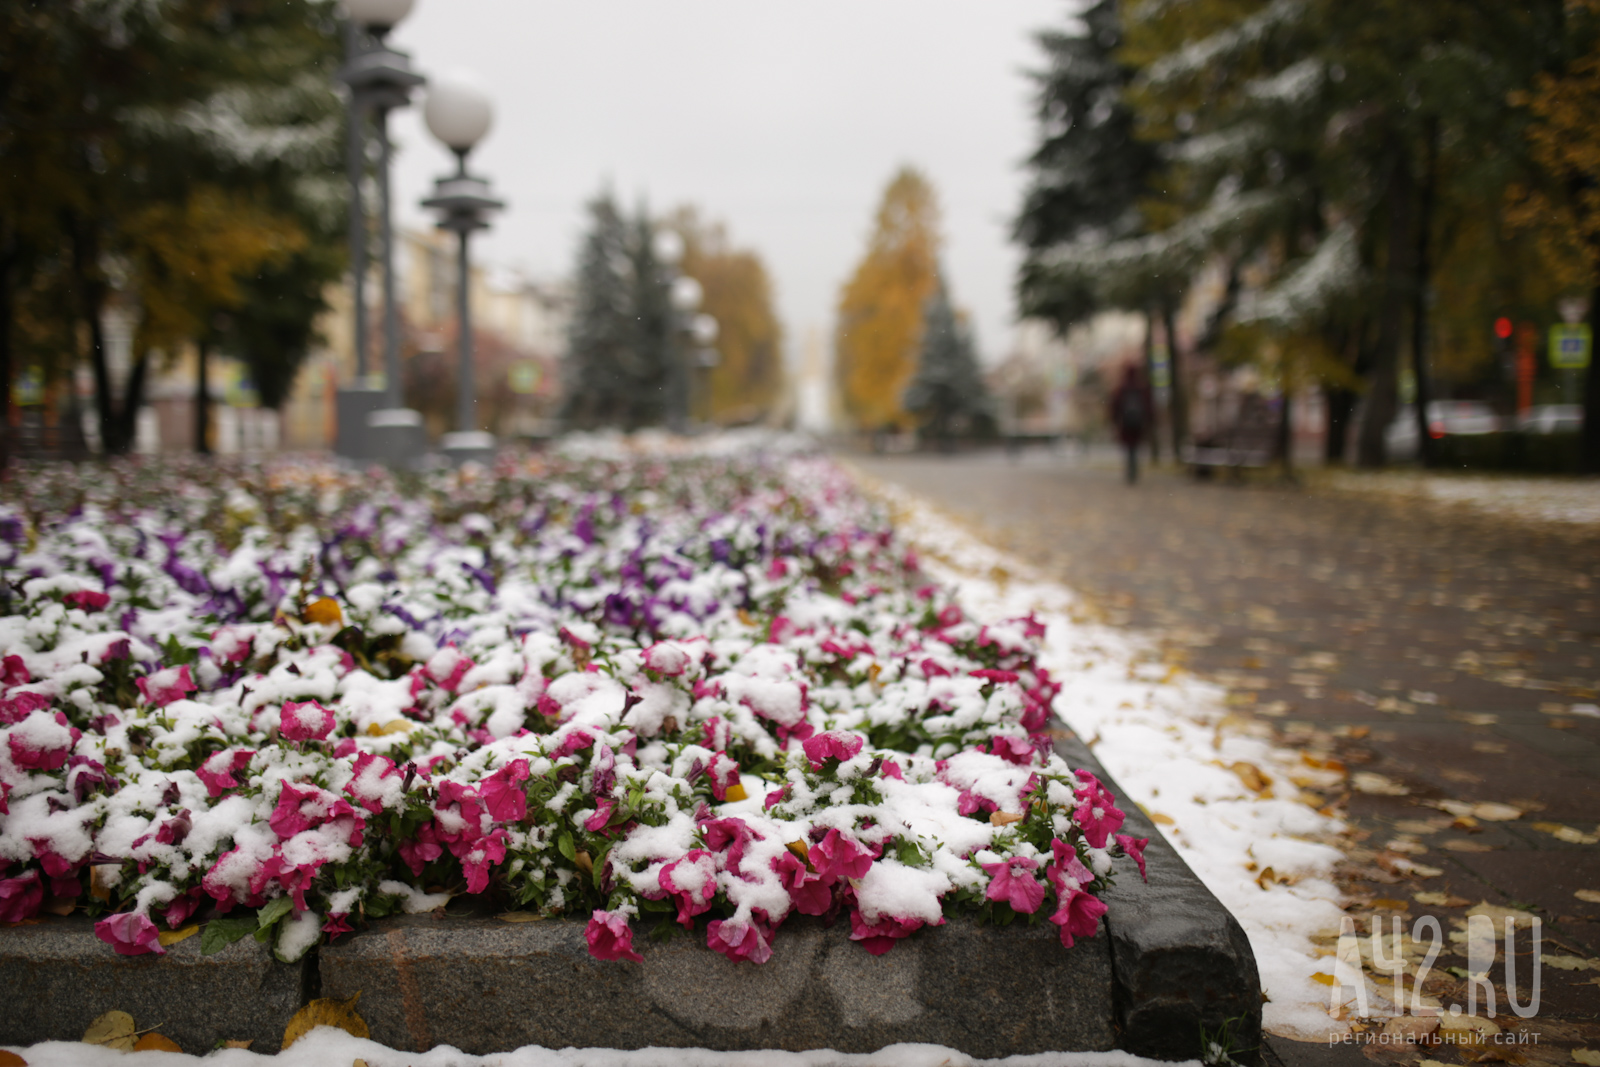 До -11 и дождь с мокрым снегом: синоптики дали прогноз погоды на выходные дни в Кузбассе